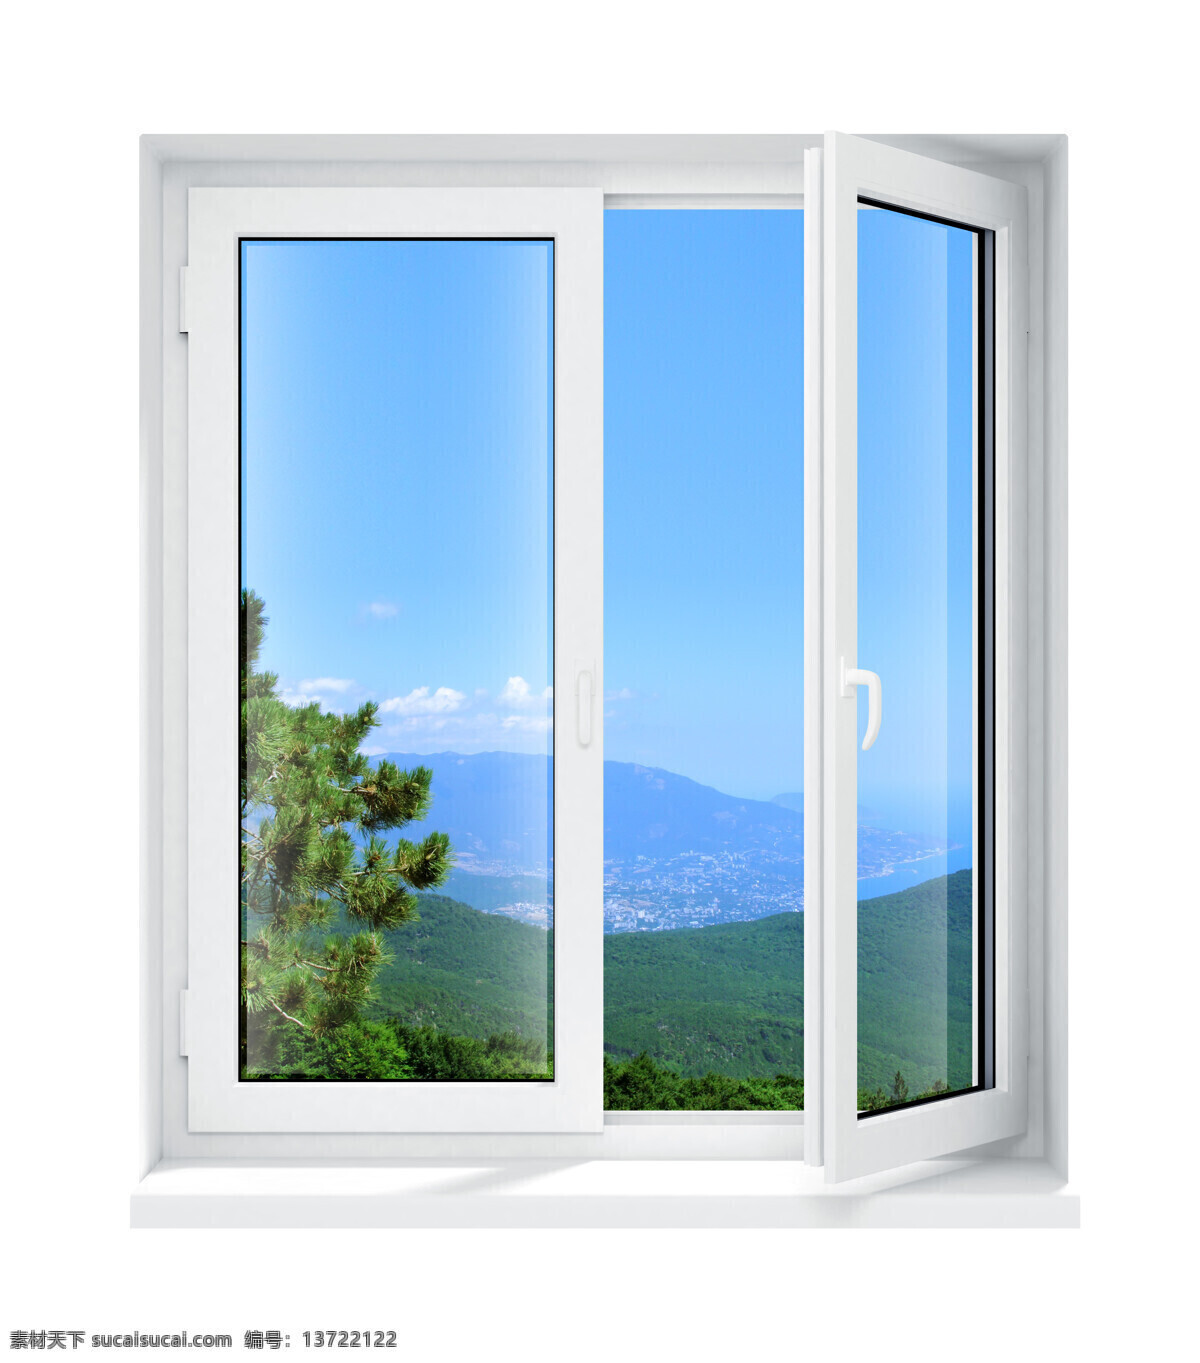 开 窗子 门窗 明朗 装潢 窗 玻璃窗 敞开的窗子 塑钢窗 窗前 其他类别 环境家居